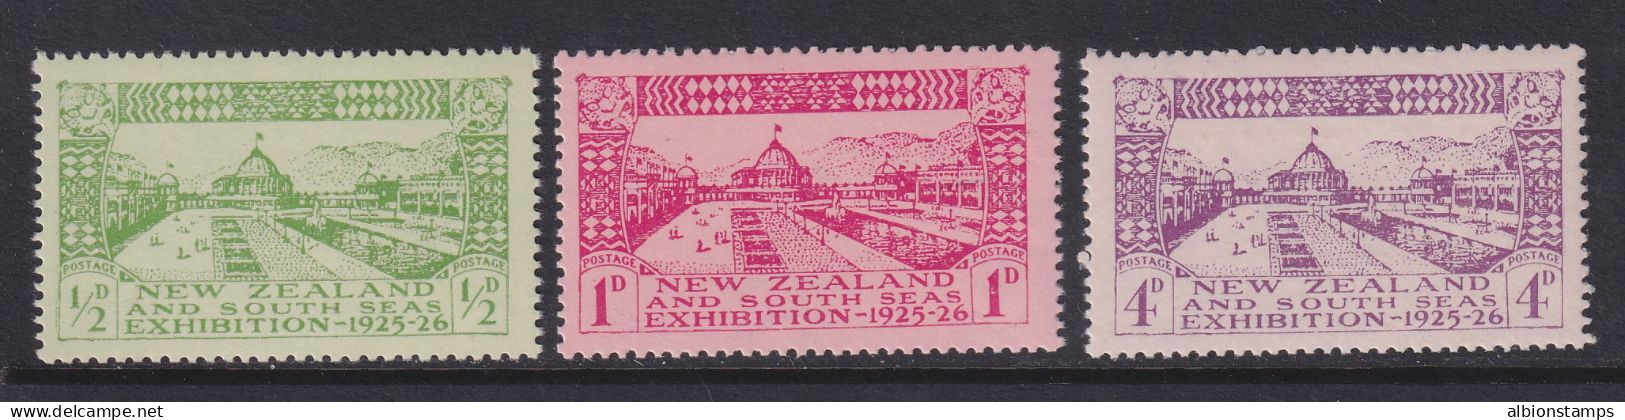 New Zealand, Scott 179-181 (SG 463-465), MNH - Ongebruikt